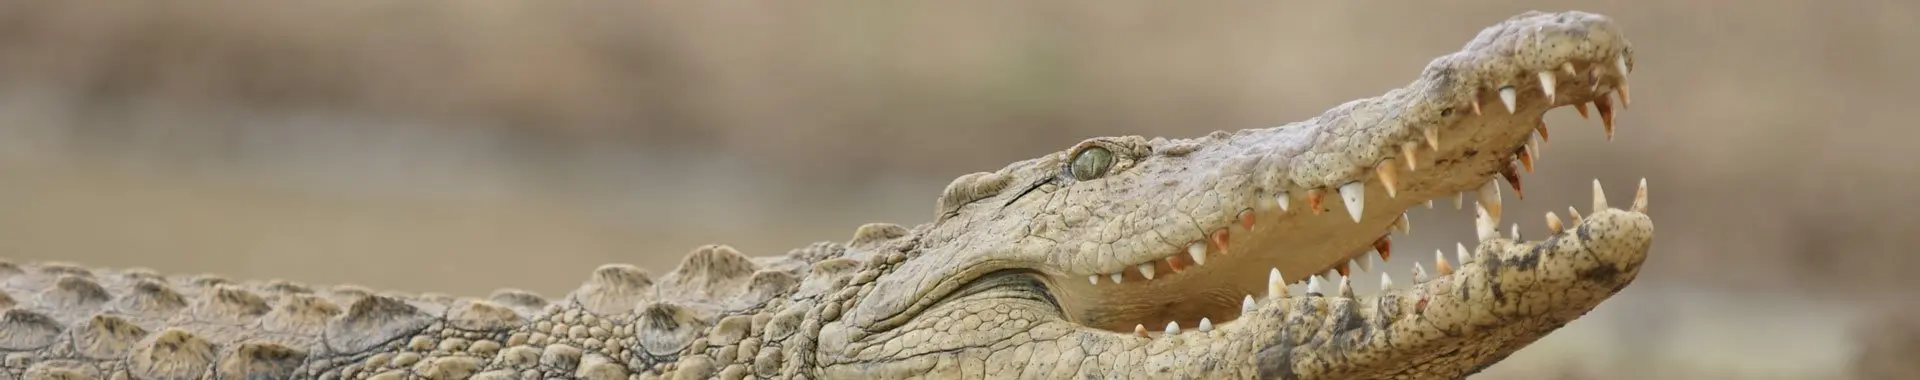 Сафари с крокодилами в Танзании